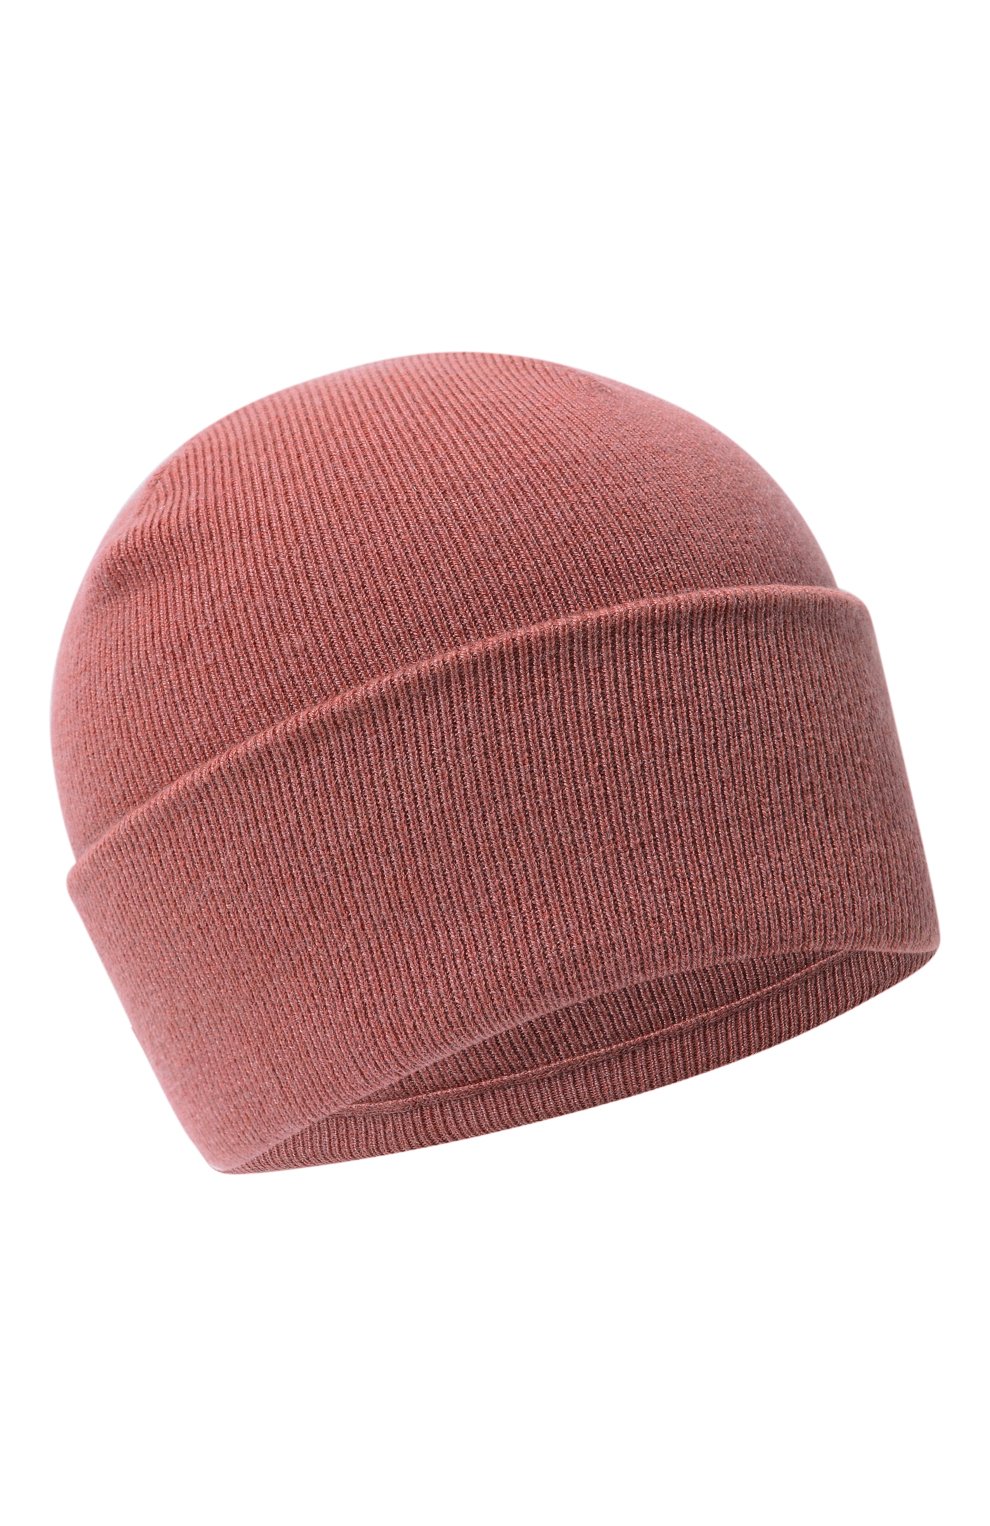 Детского кашемировая шапка BRUNELLO CUCINELLI розового цвета, арт. B12M14599A | Фото 1 (Материал: Текстиль, Кашемир, Шерсть)